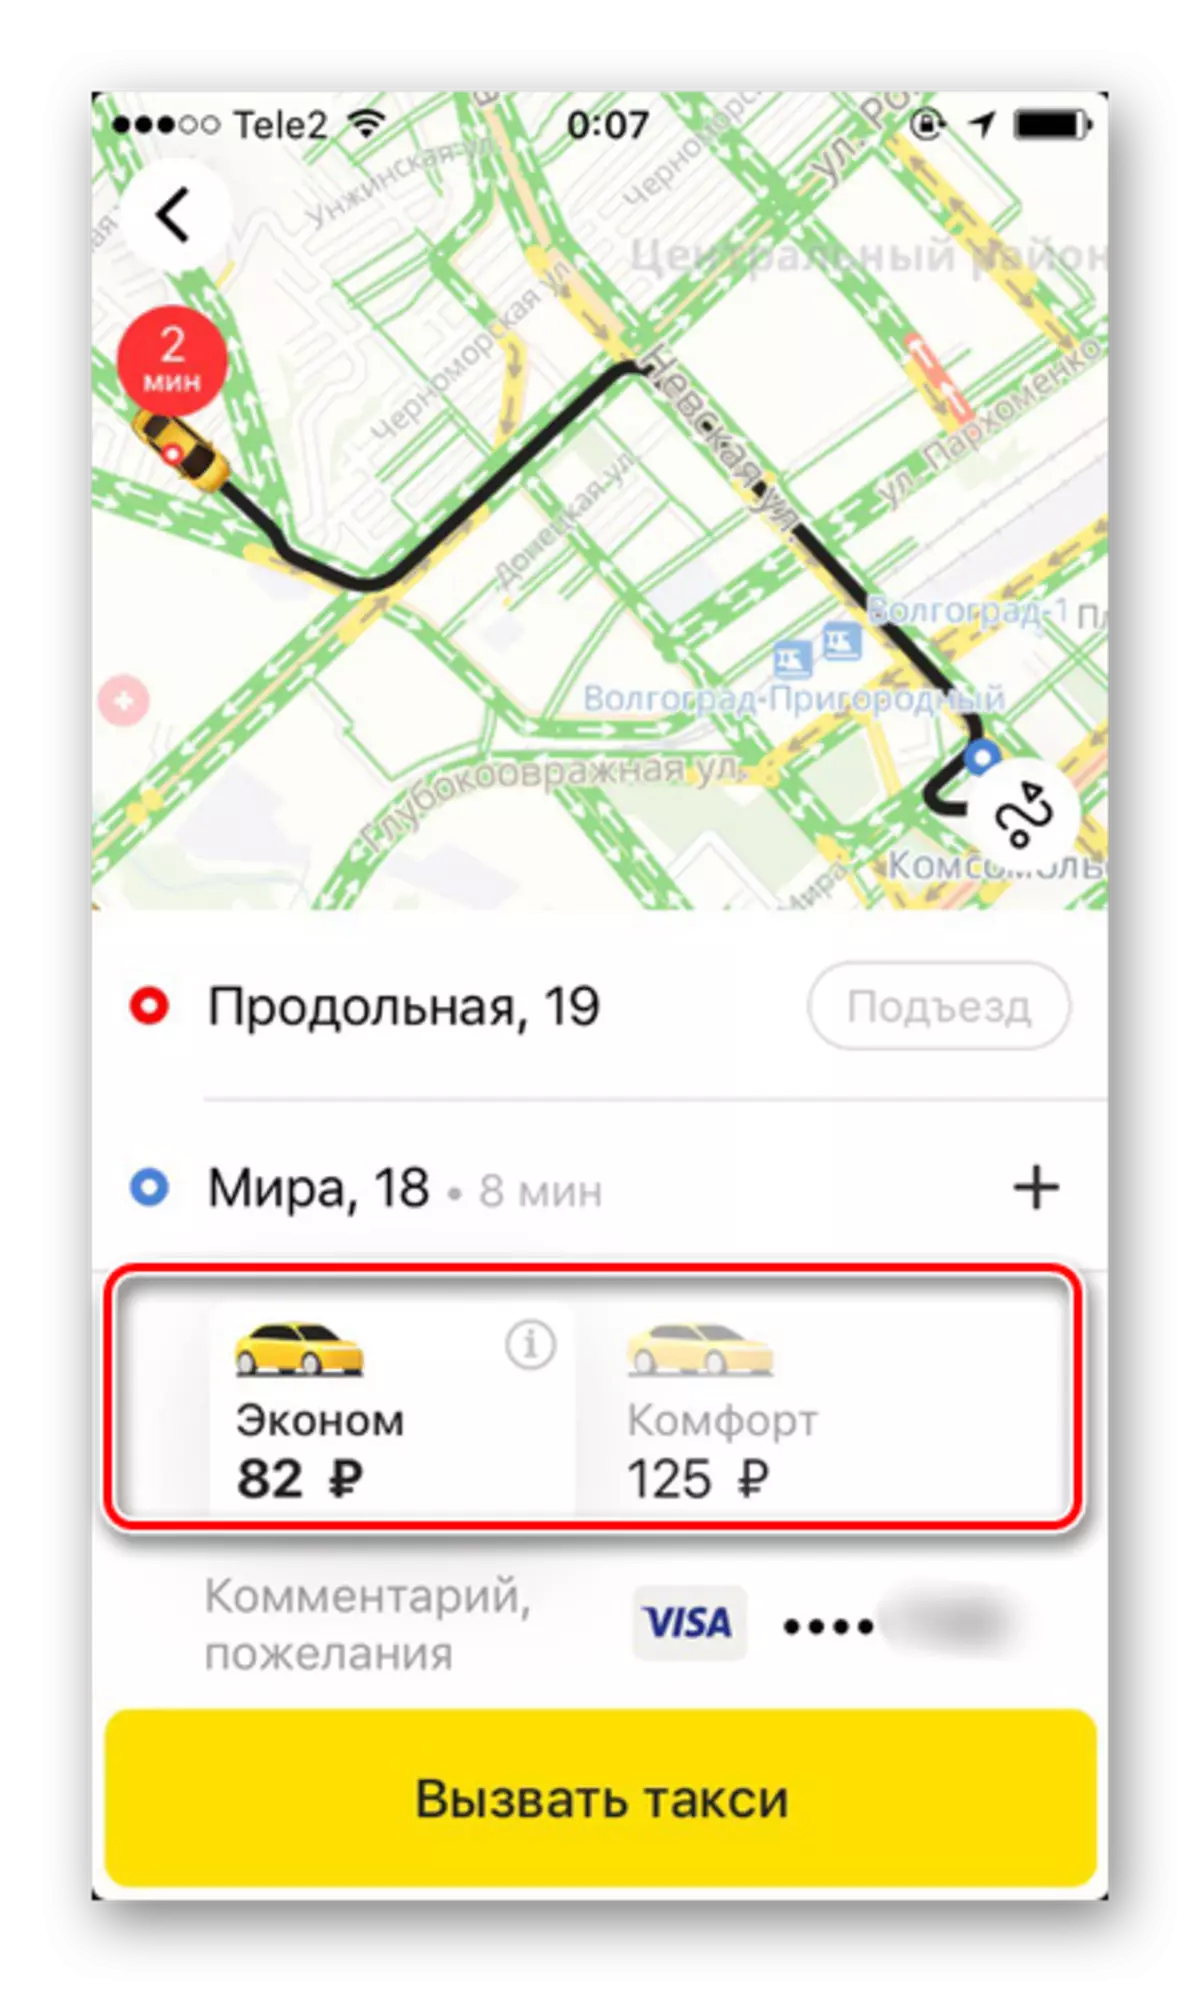 Razpoložljive tarife pri naročanju taksija v aplikaciji Yandex.Taxi na iPhone